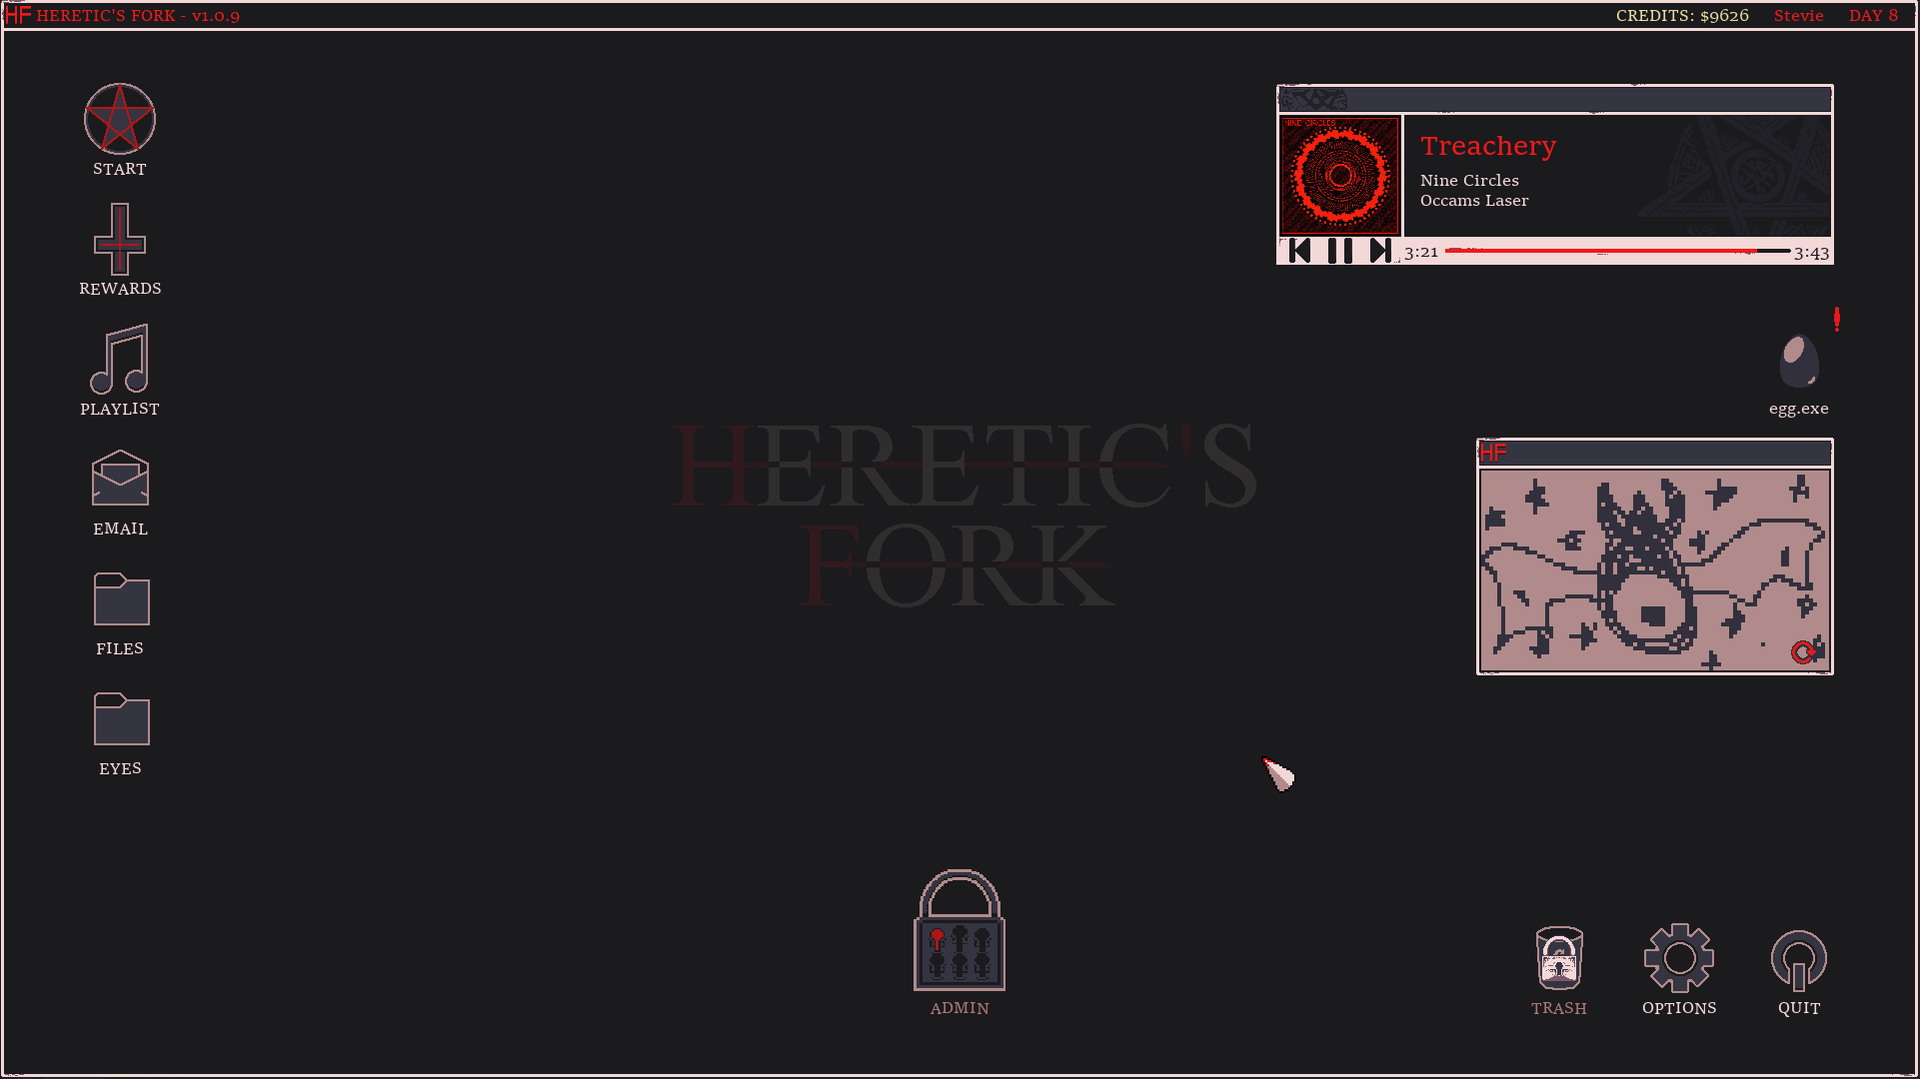 Heretic's Fork - screenshot 7